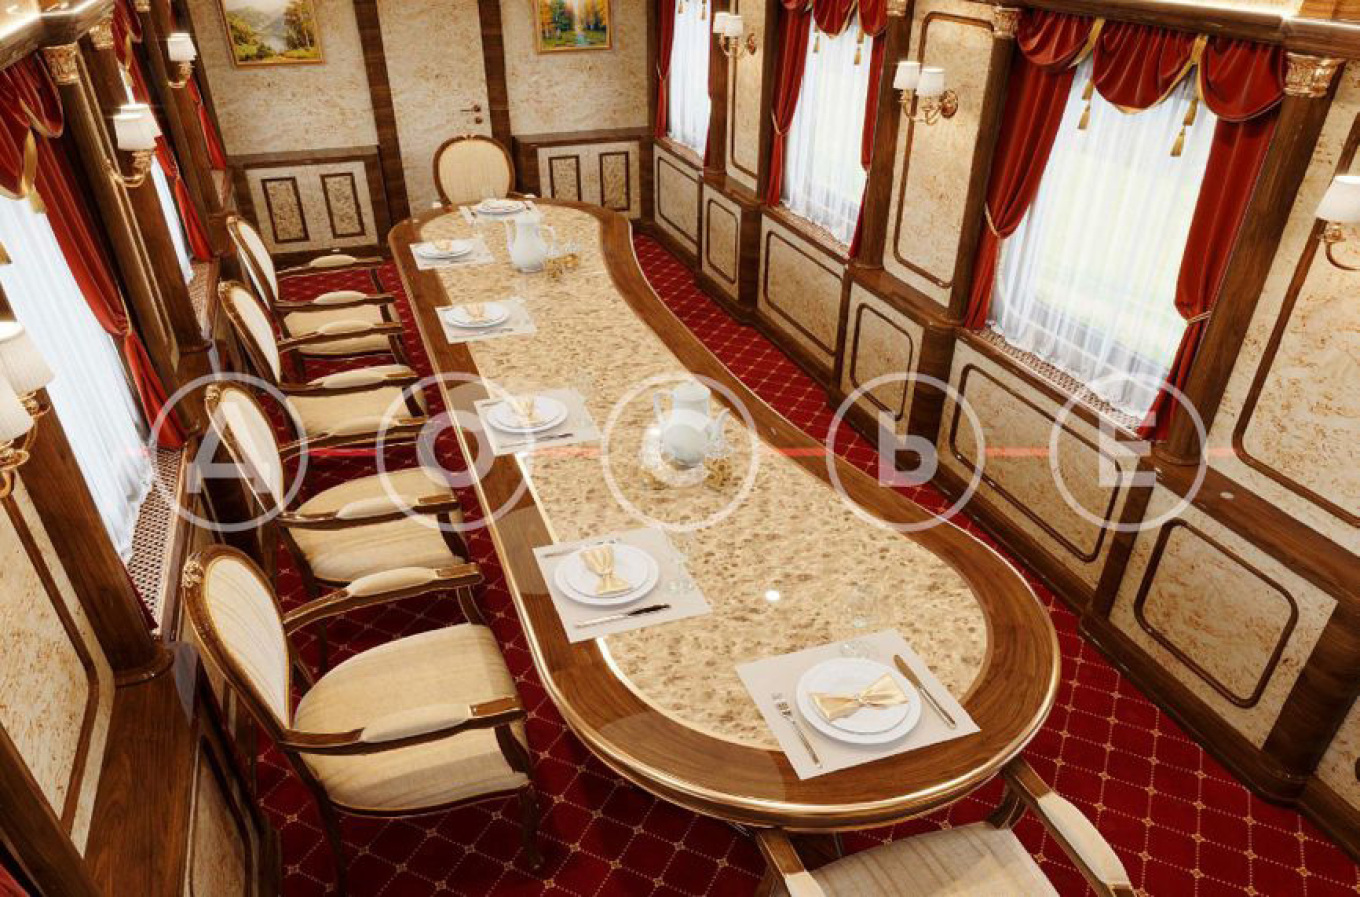 Το τρένο του Πούτιν είναι ένα «σιδηροδρομικό παλάτι» – Θωρακισμένο, με σπα, κέντρο ομορφιάς και φανταστικά σαλόνια (pics)